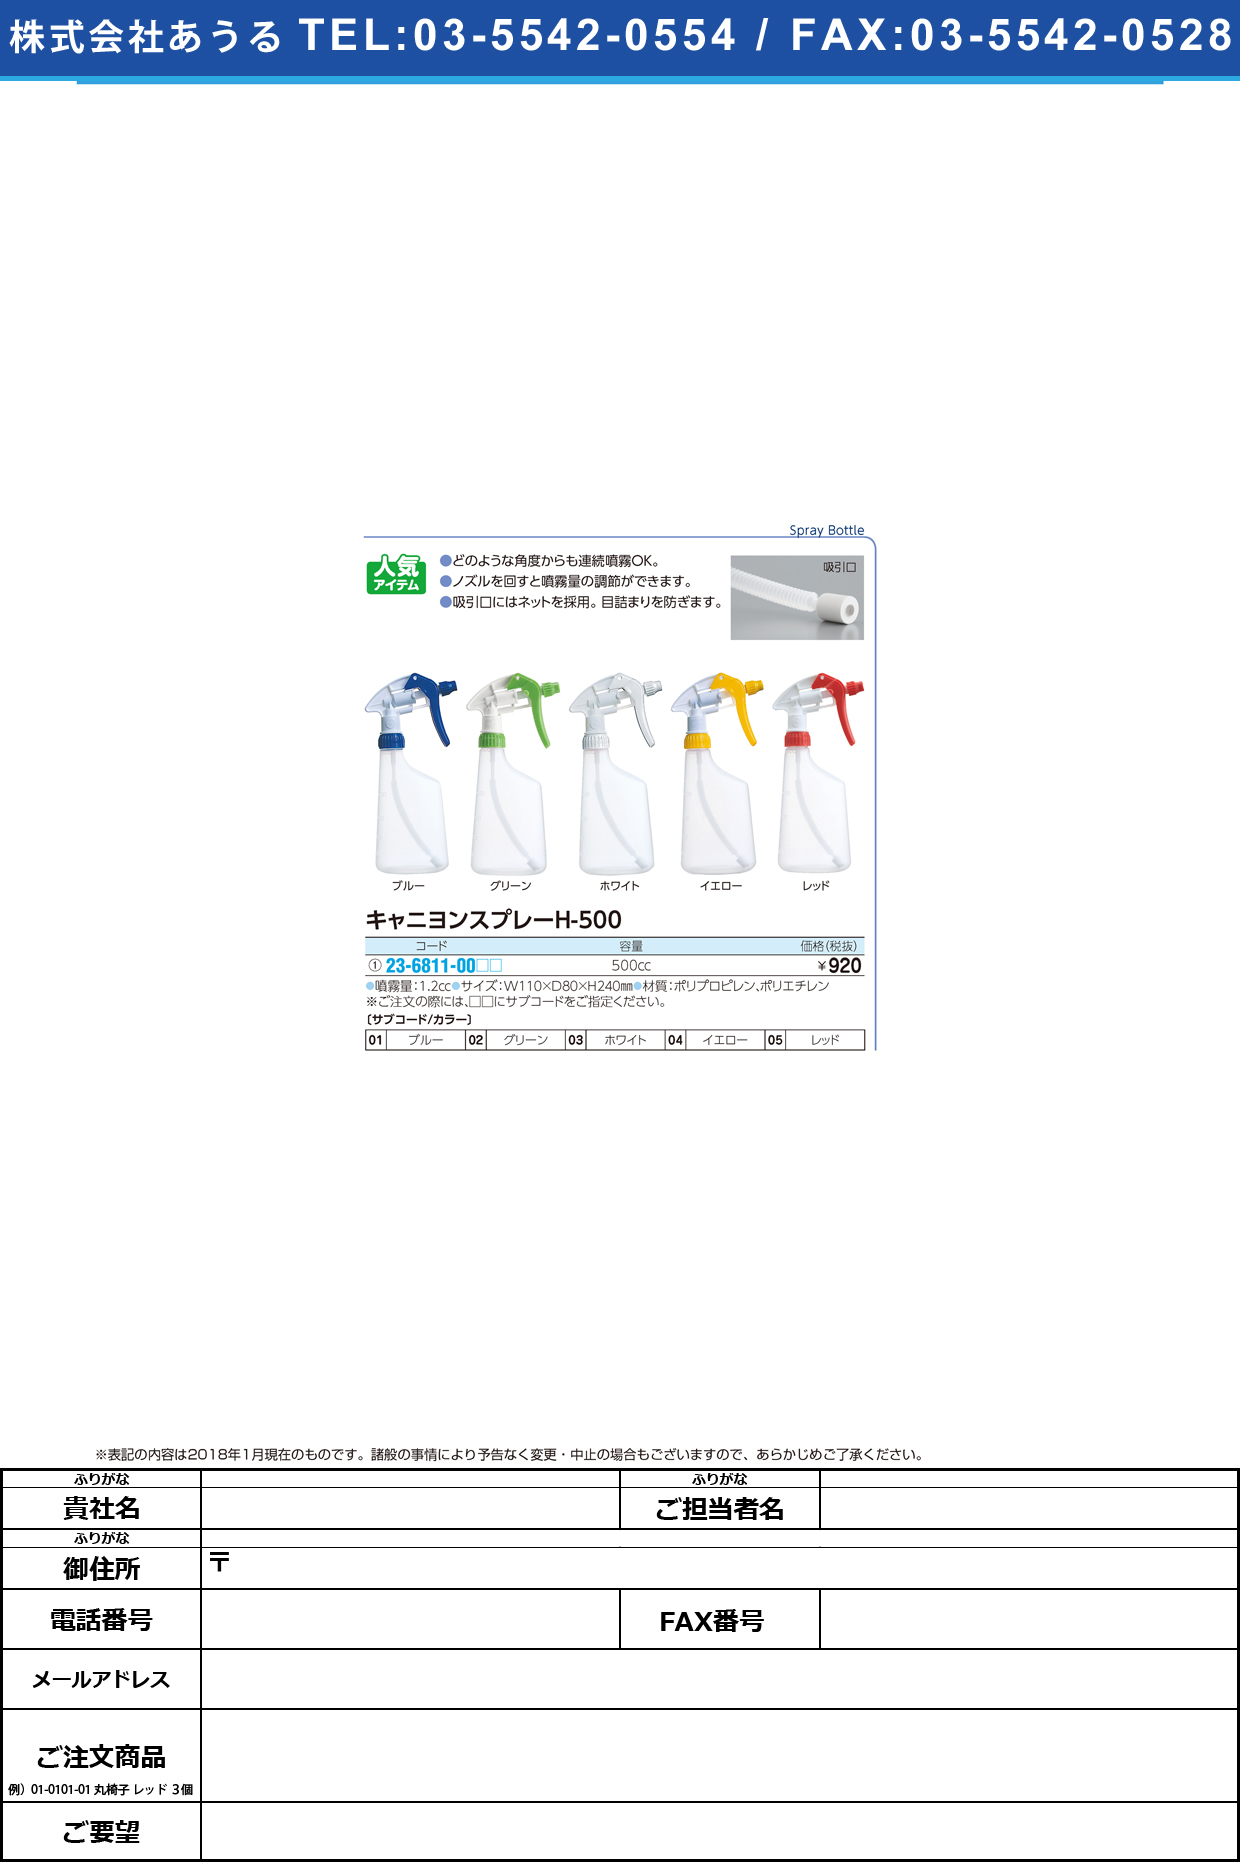 (23-6811-00)キャニヨンスプレー H-500(500CC) ｷｬﾆﾖﾝｽﾌﾟﾚｰ ホワイト(山崎産業)【1個単位】【2019年カタログ商品】